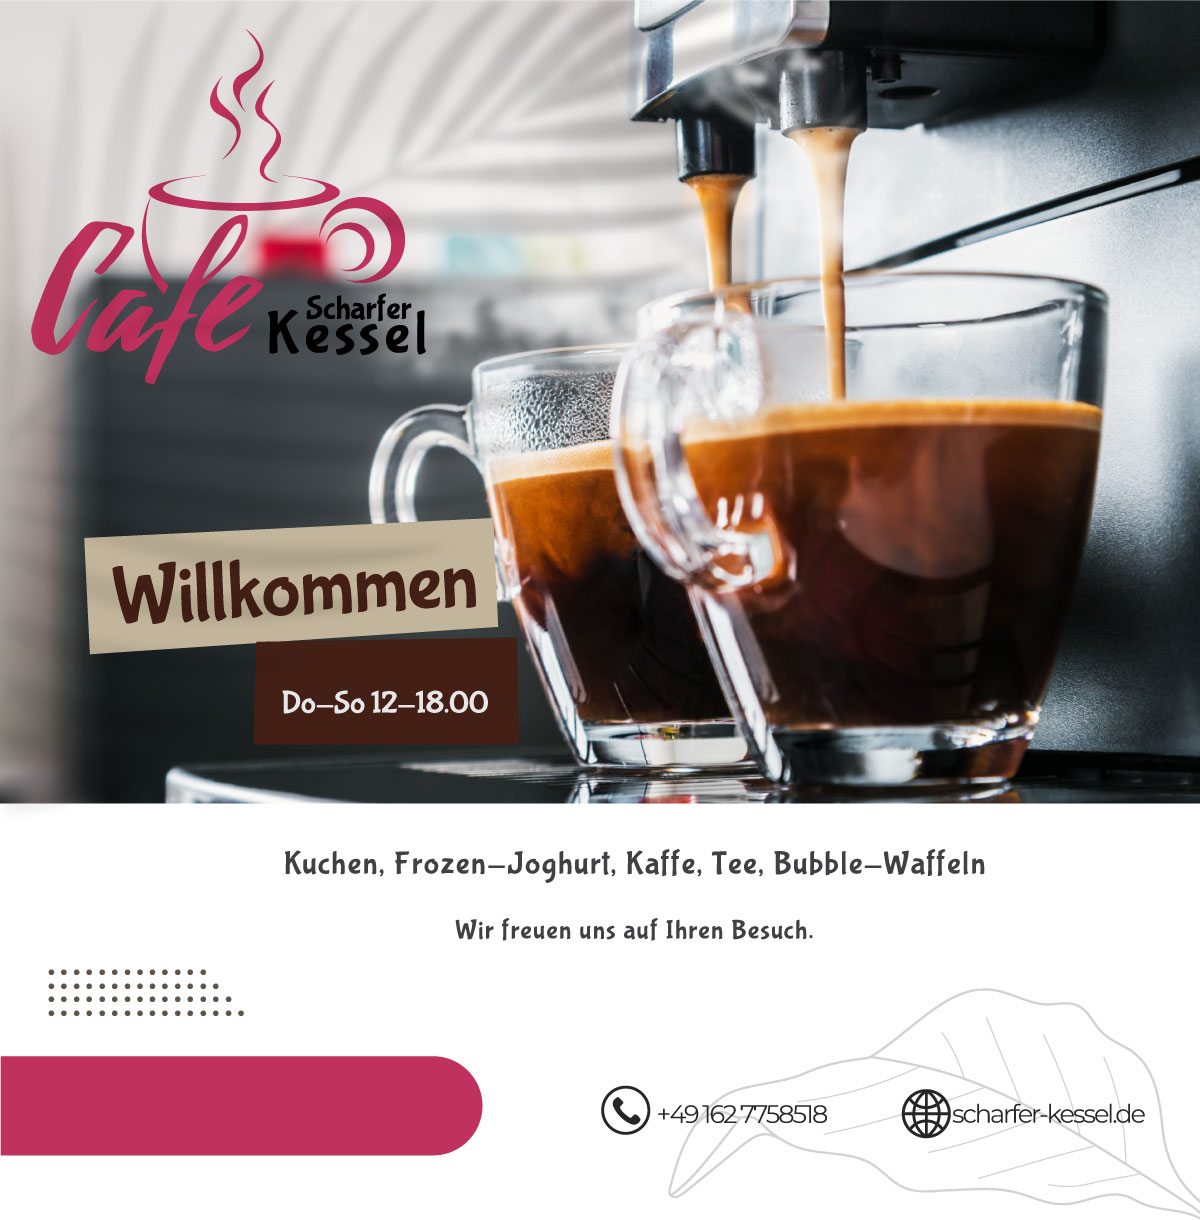 coffee_ii Restaurant & Pension "Scharfer Kessel" | Kontakt